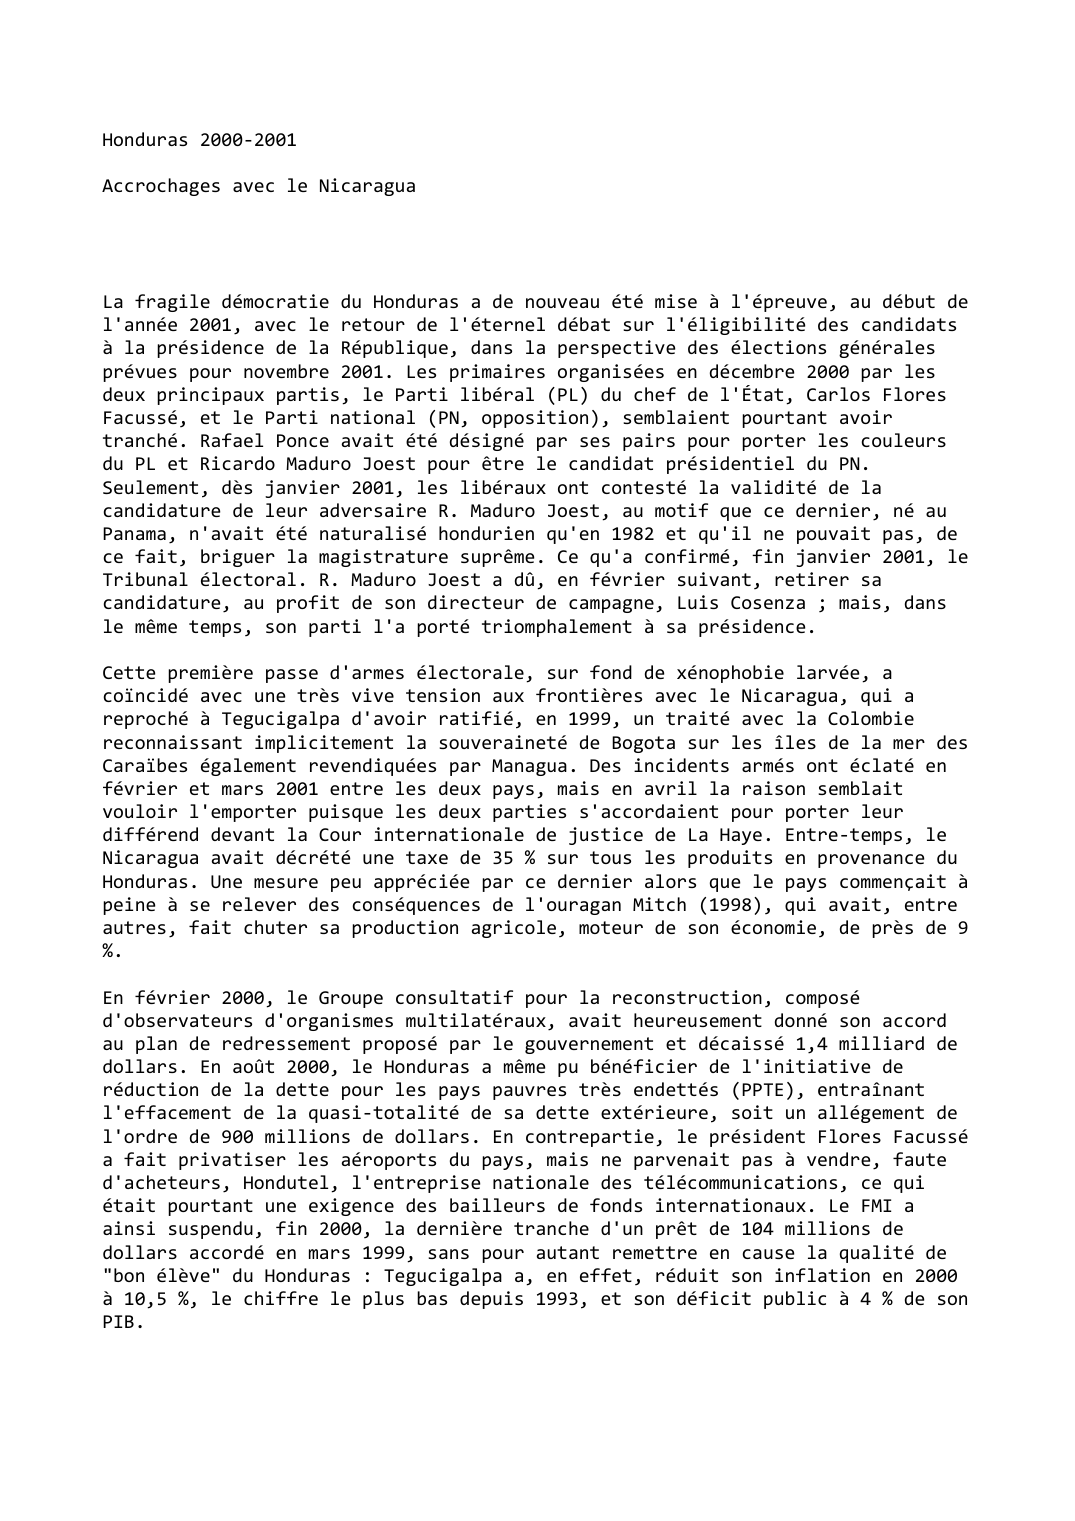 Prévisualisation du document Honduras (2000-2001)

Accrochages avec le Nicaragua